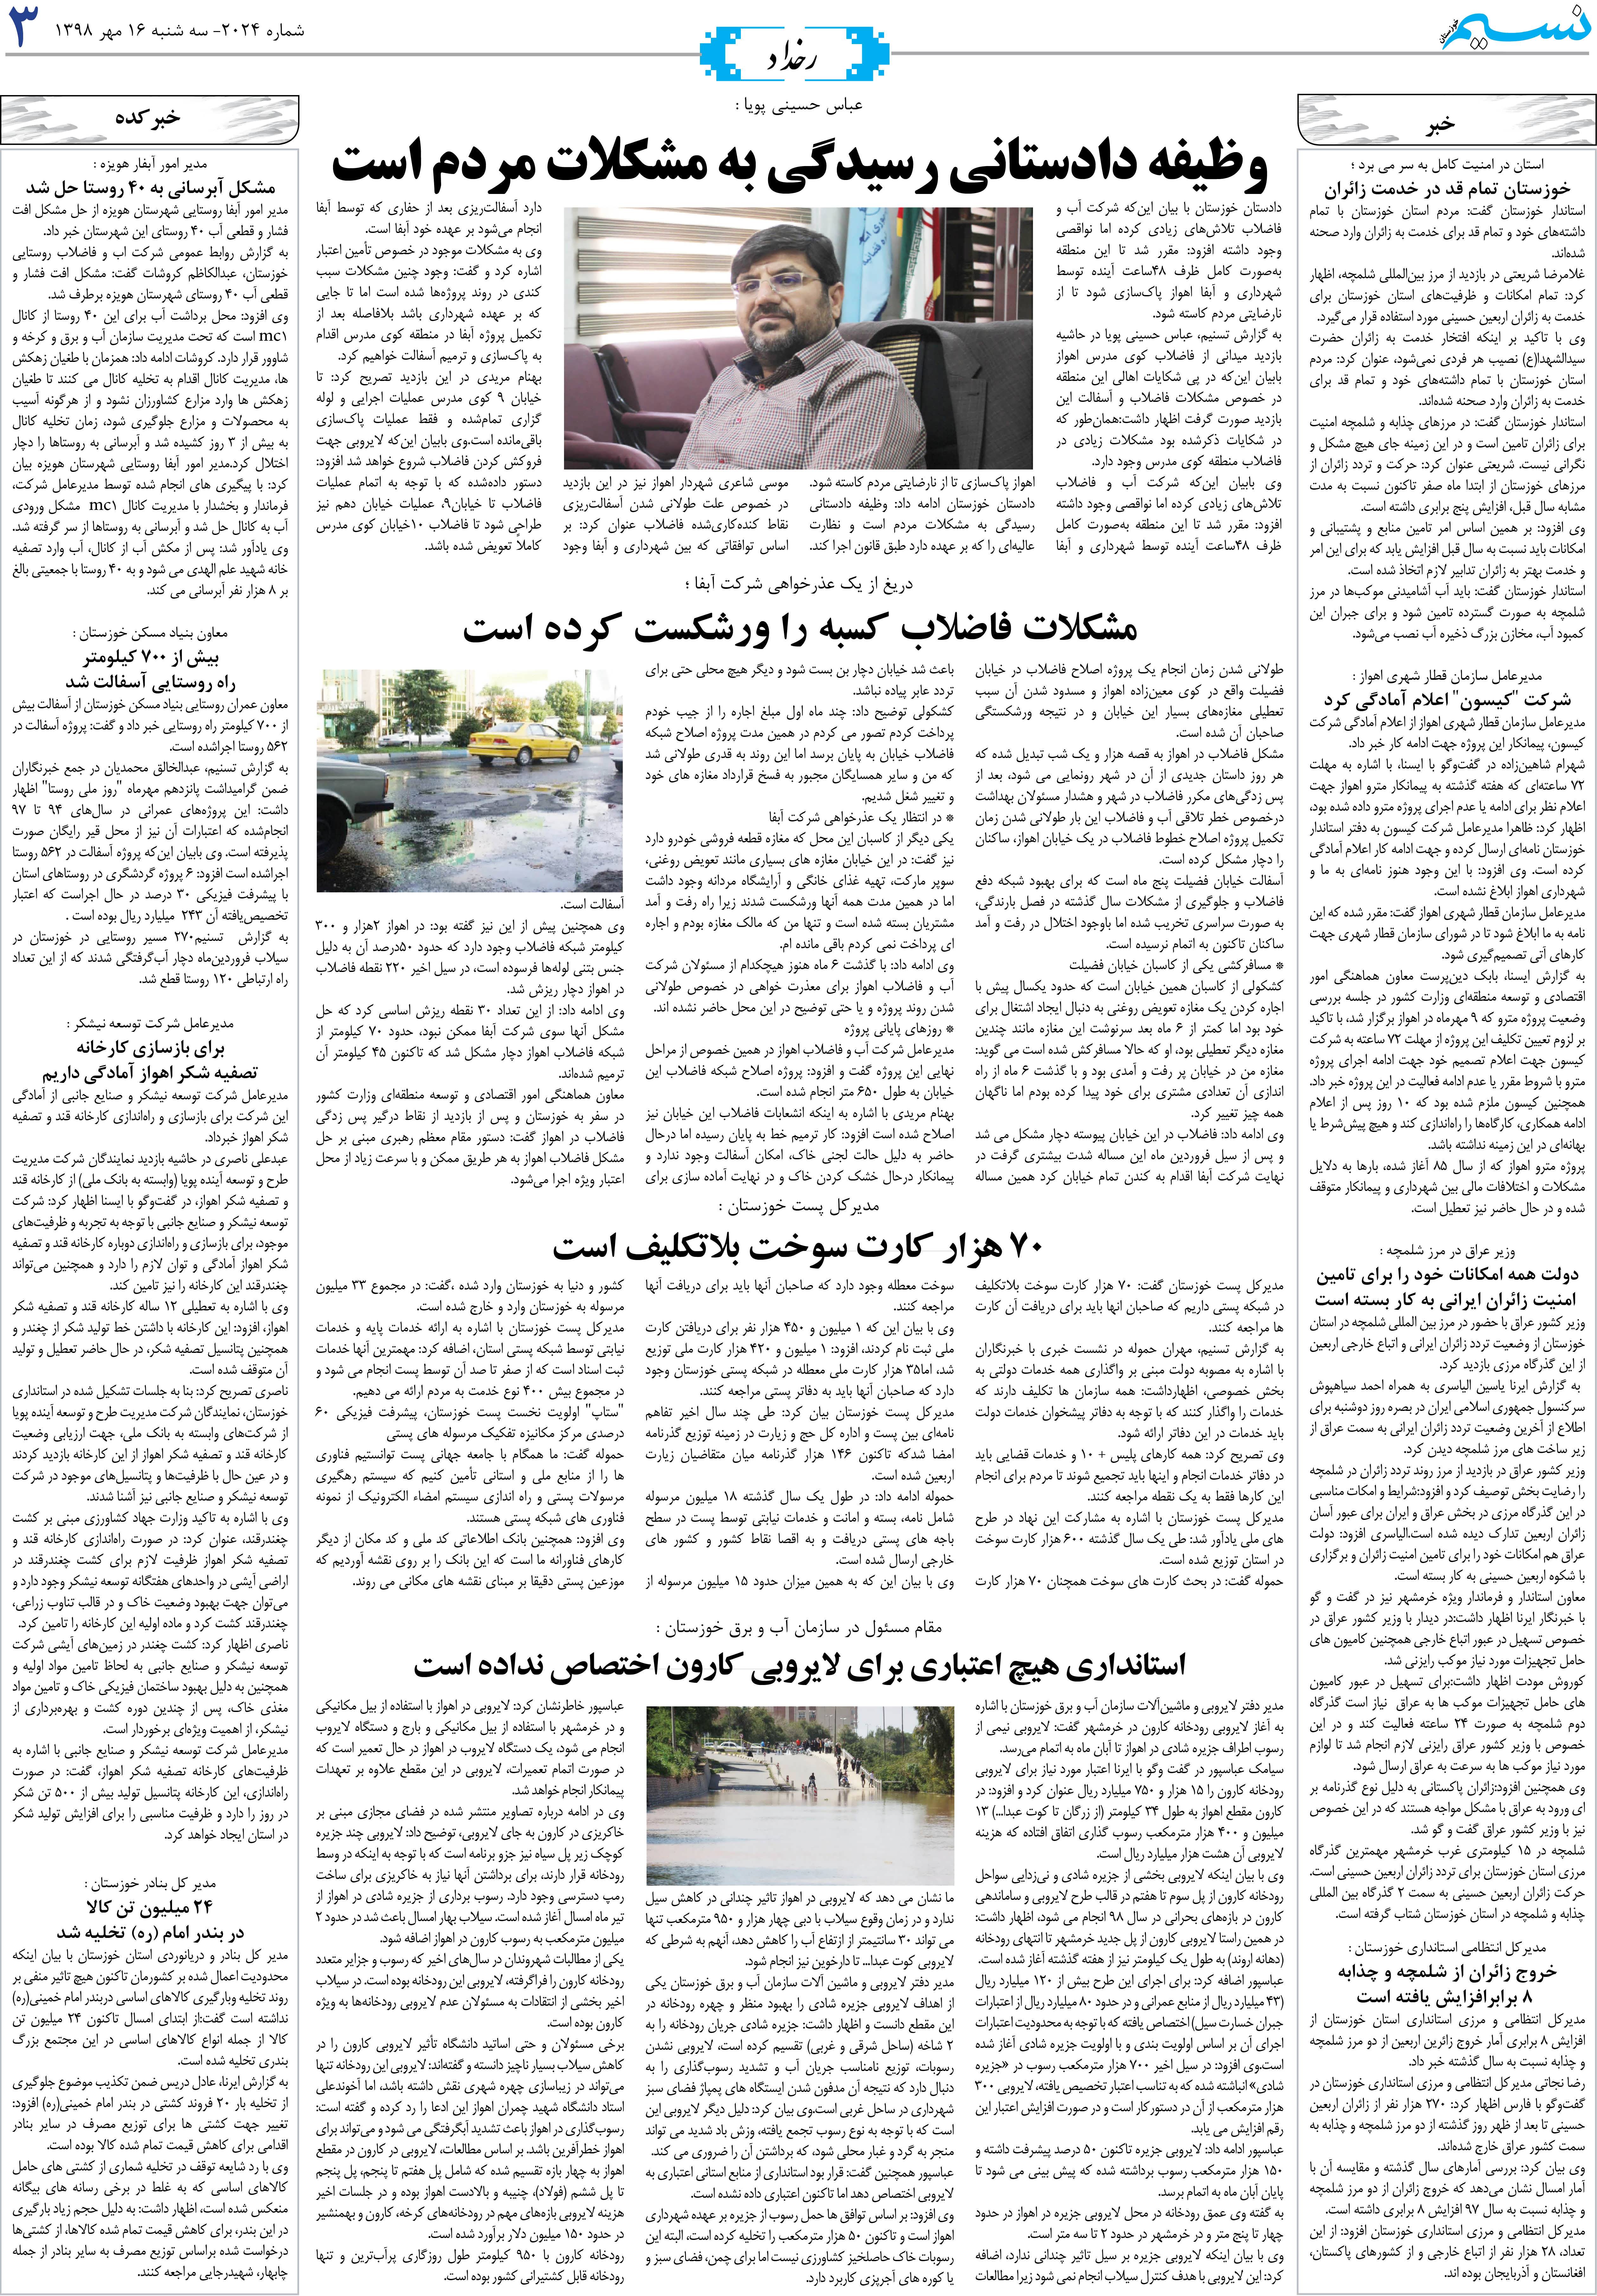 صفحه رخداد روزنامه نسیم شماره 2024